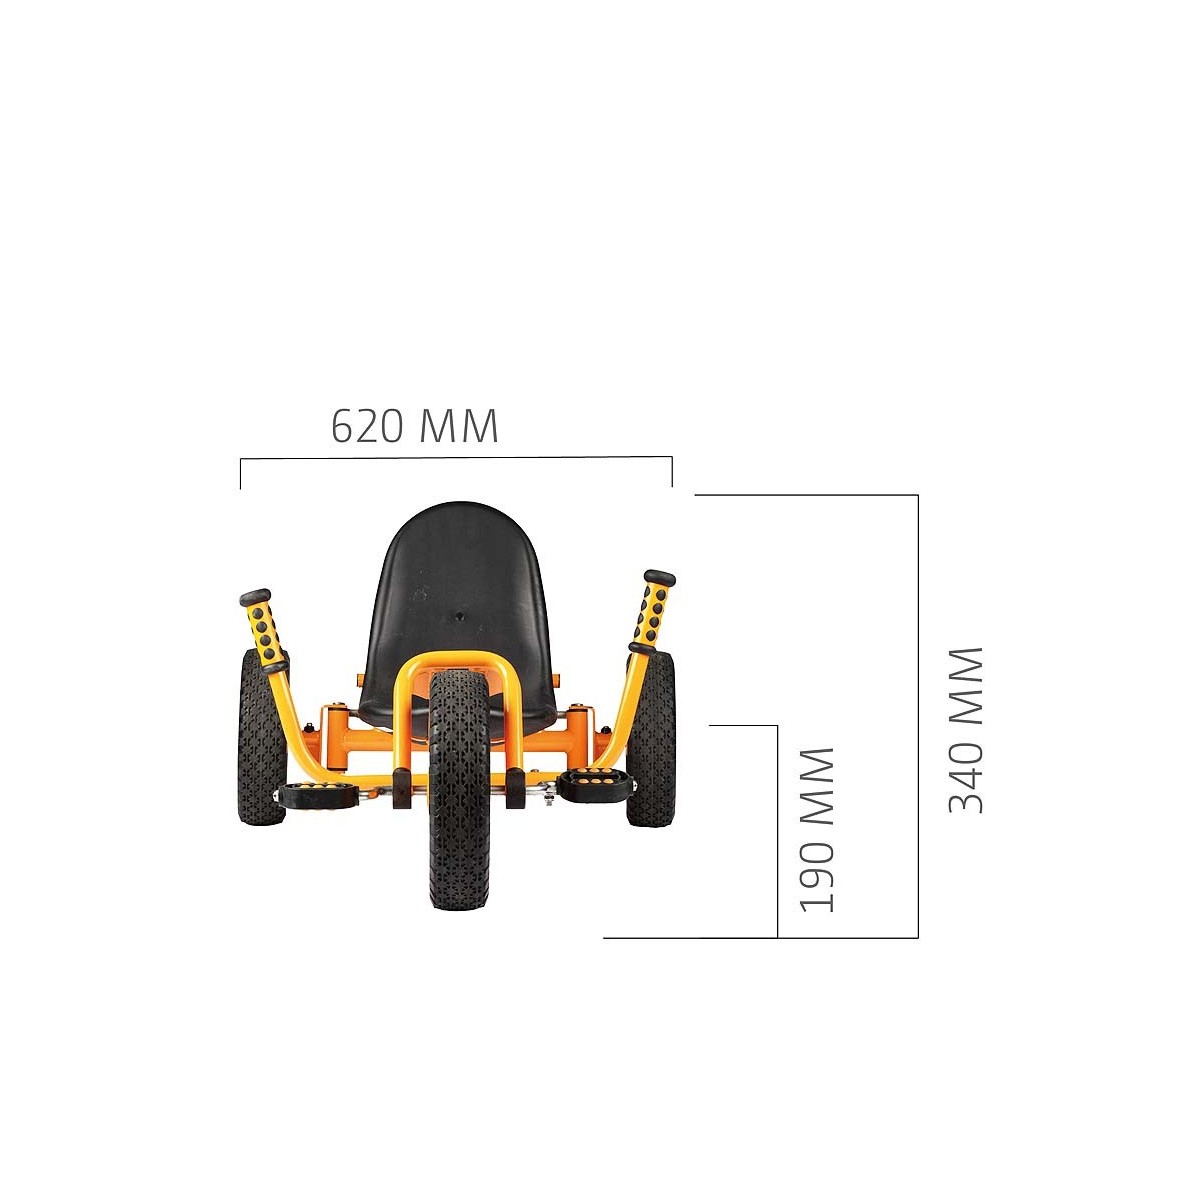 Rider Top Trike - 4 - Le Rider Top Trike est unique pour tous les terrains !
Avec son siège bas et le mécanisme de direction de